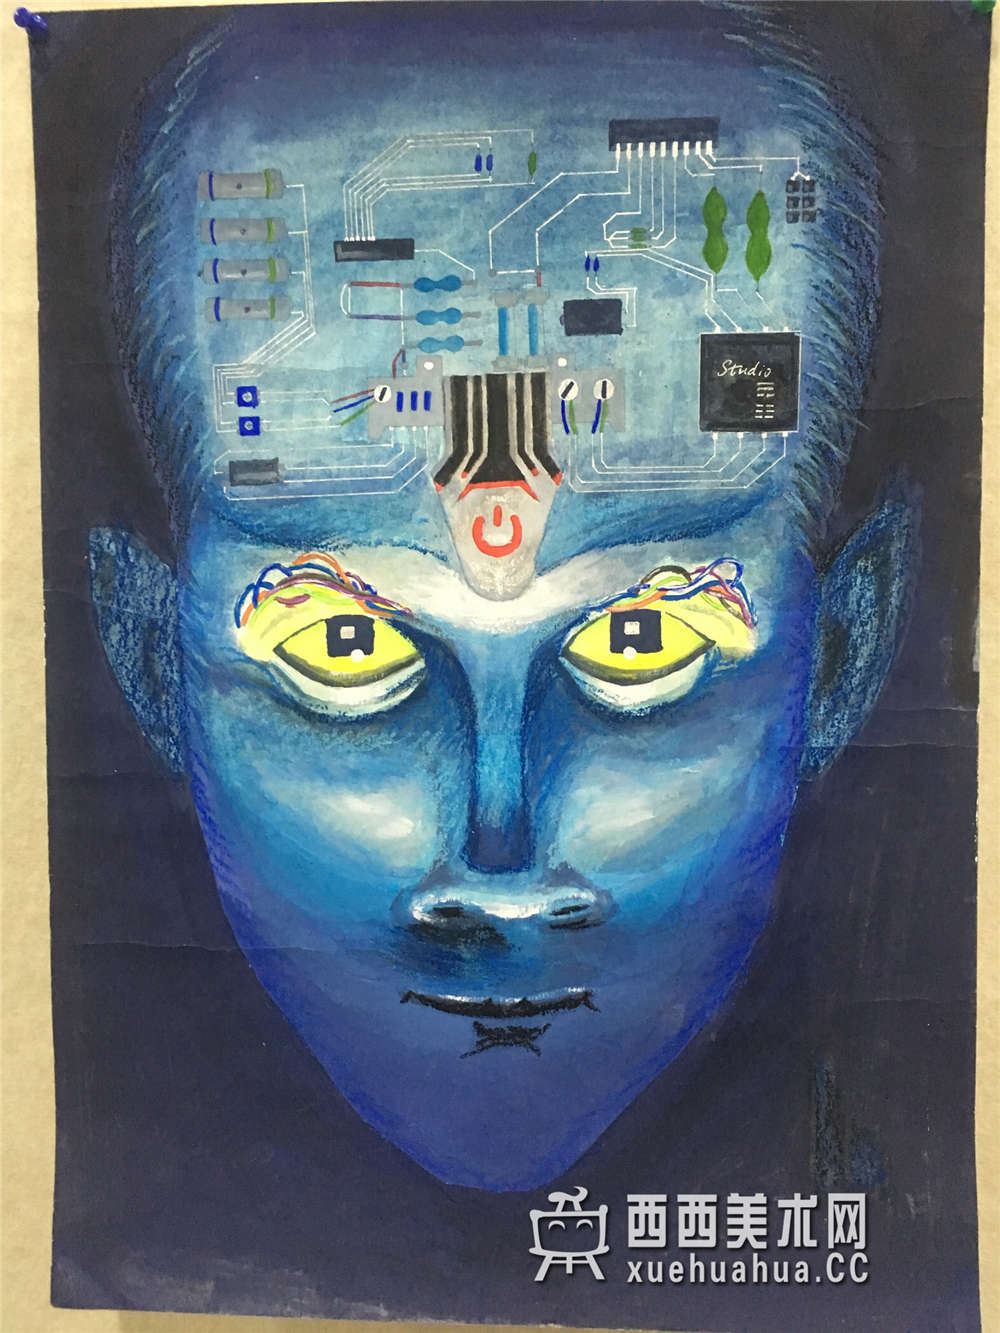 三等奖获奖中学生科幻画《梦幻机器人》分析(1)